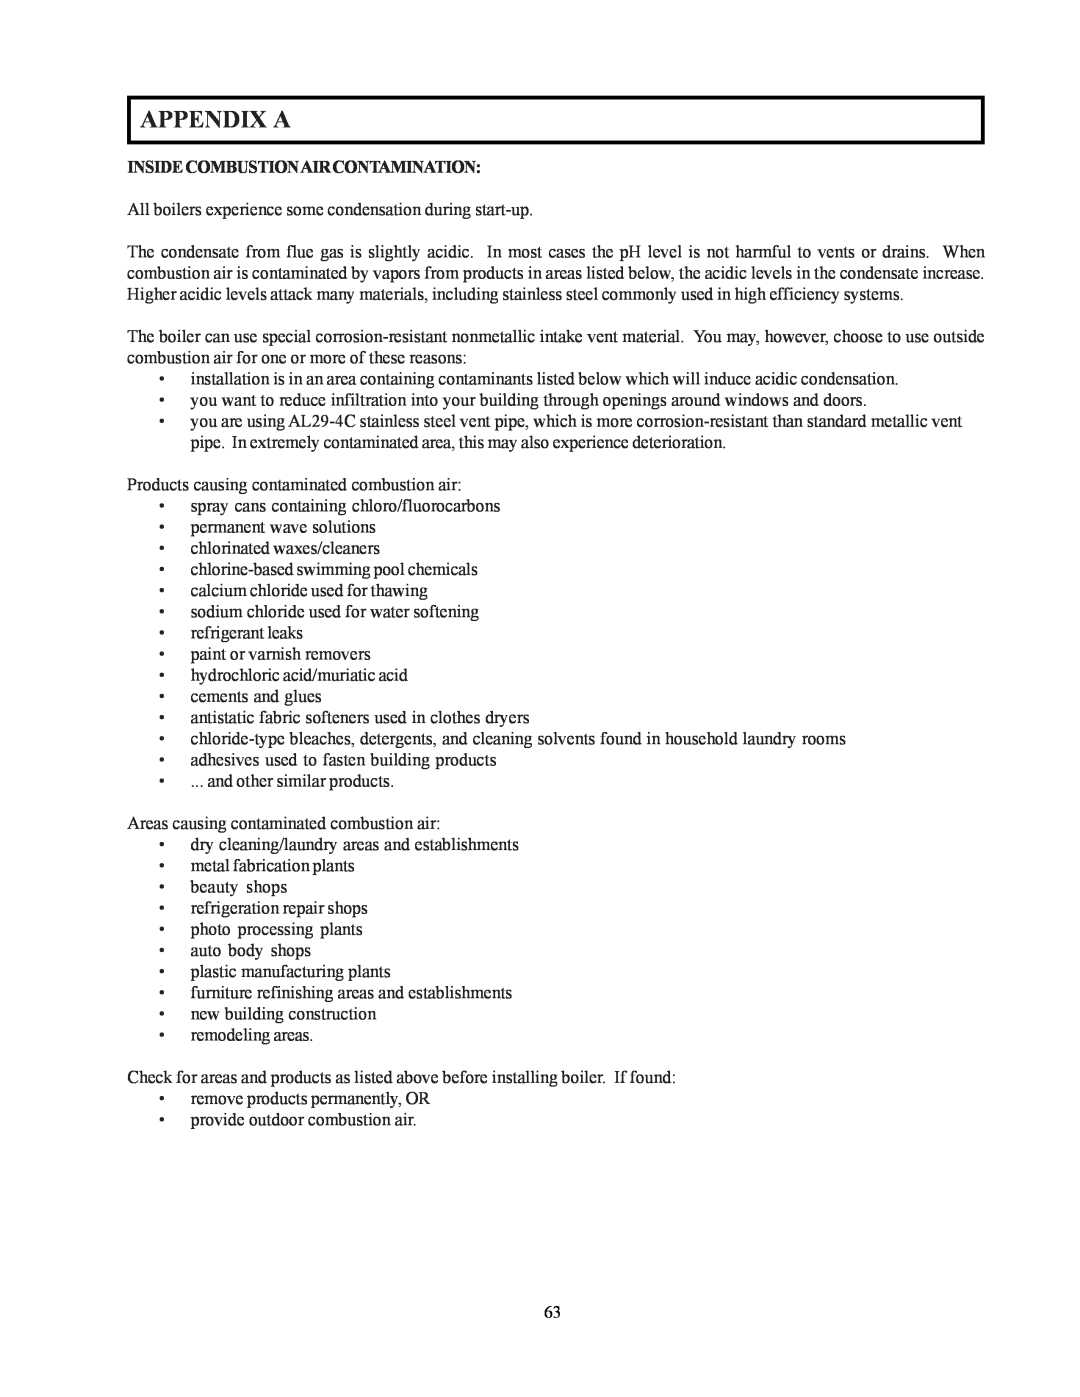 Raypak 302-902 manual Appendix A, Insidecombustionaircontamination 